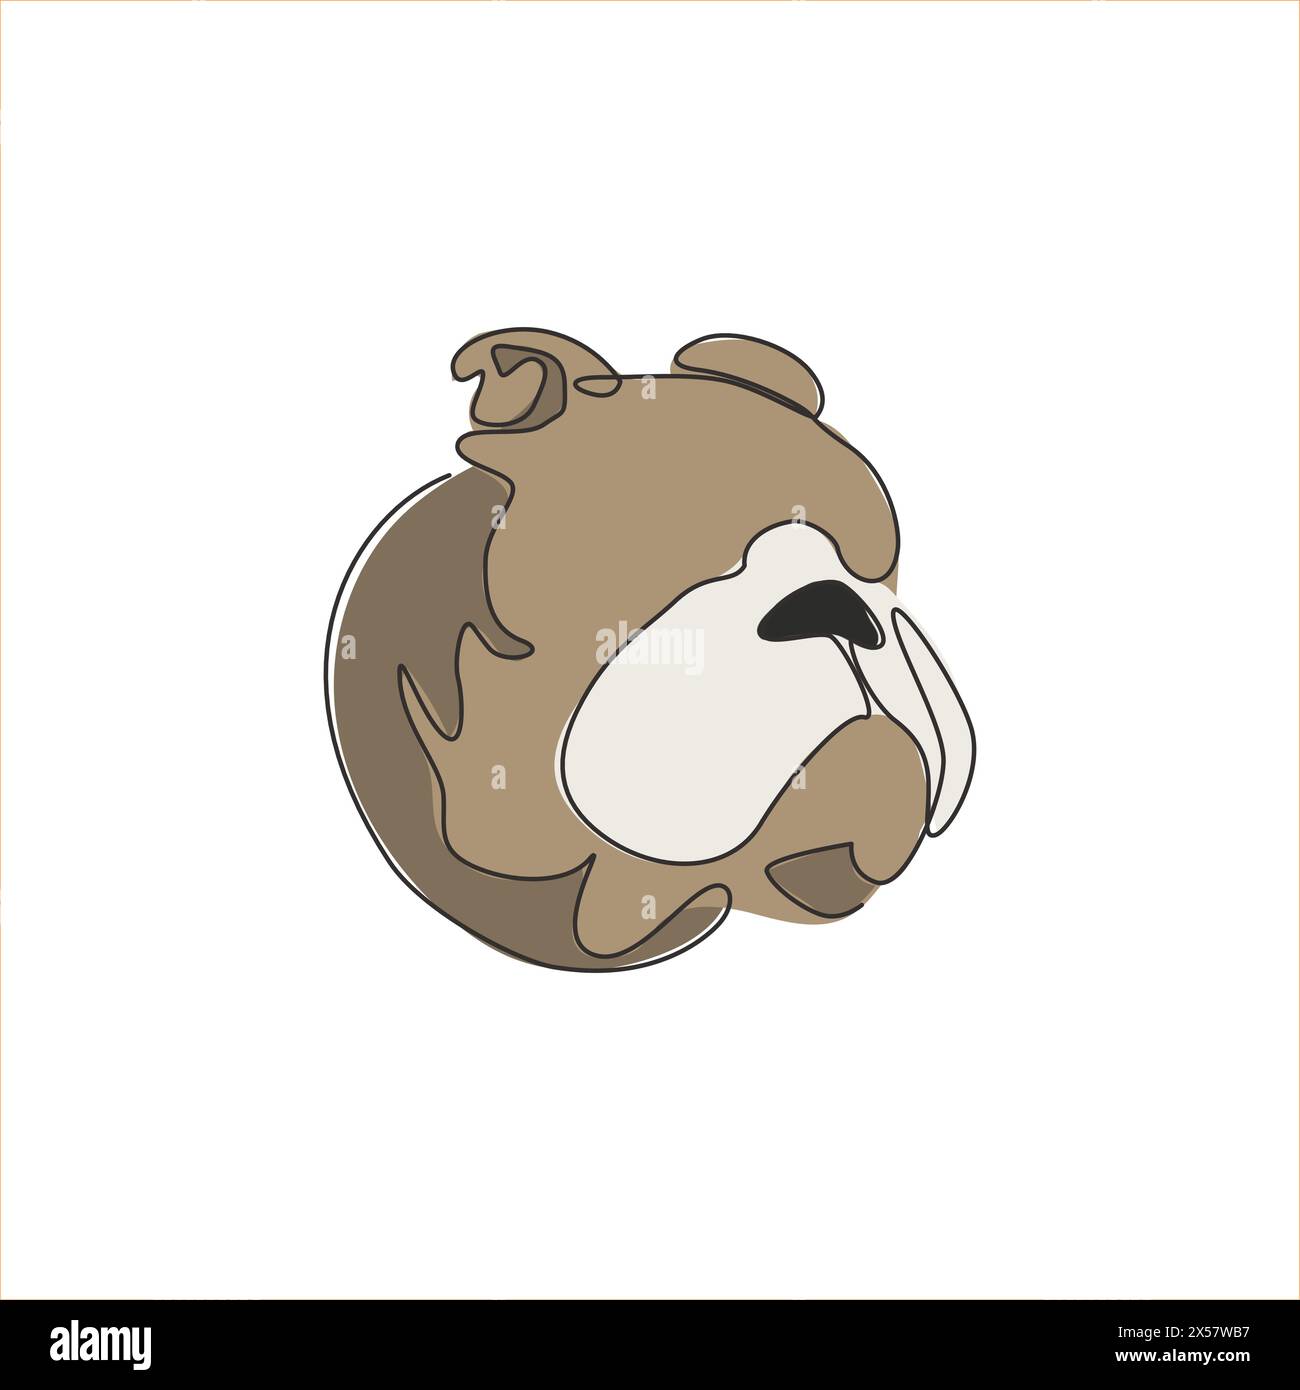 Un unico disegno continuo di una feroce testa di bulldog per l'identità del logo aziendale di sicurezza. Mascotte per cani di razza pura per un'icona che ammette animali domestici. Illustrazione Vettoriale